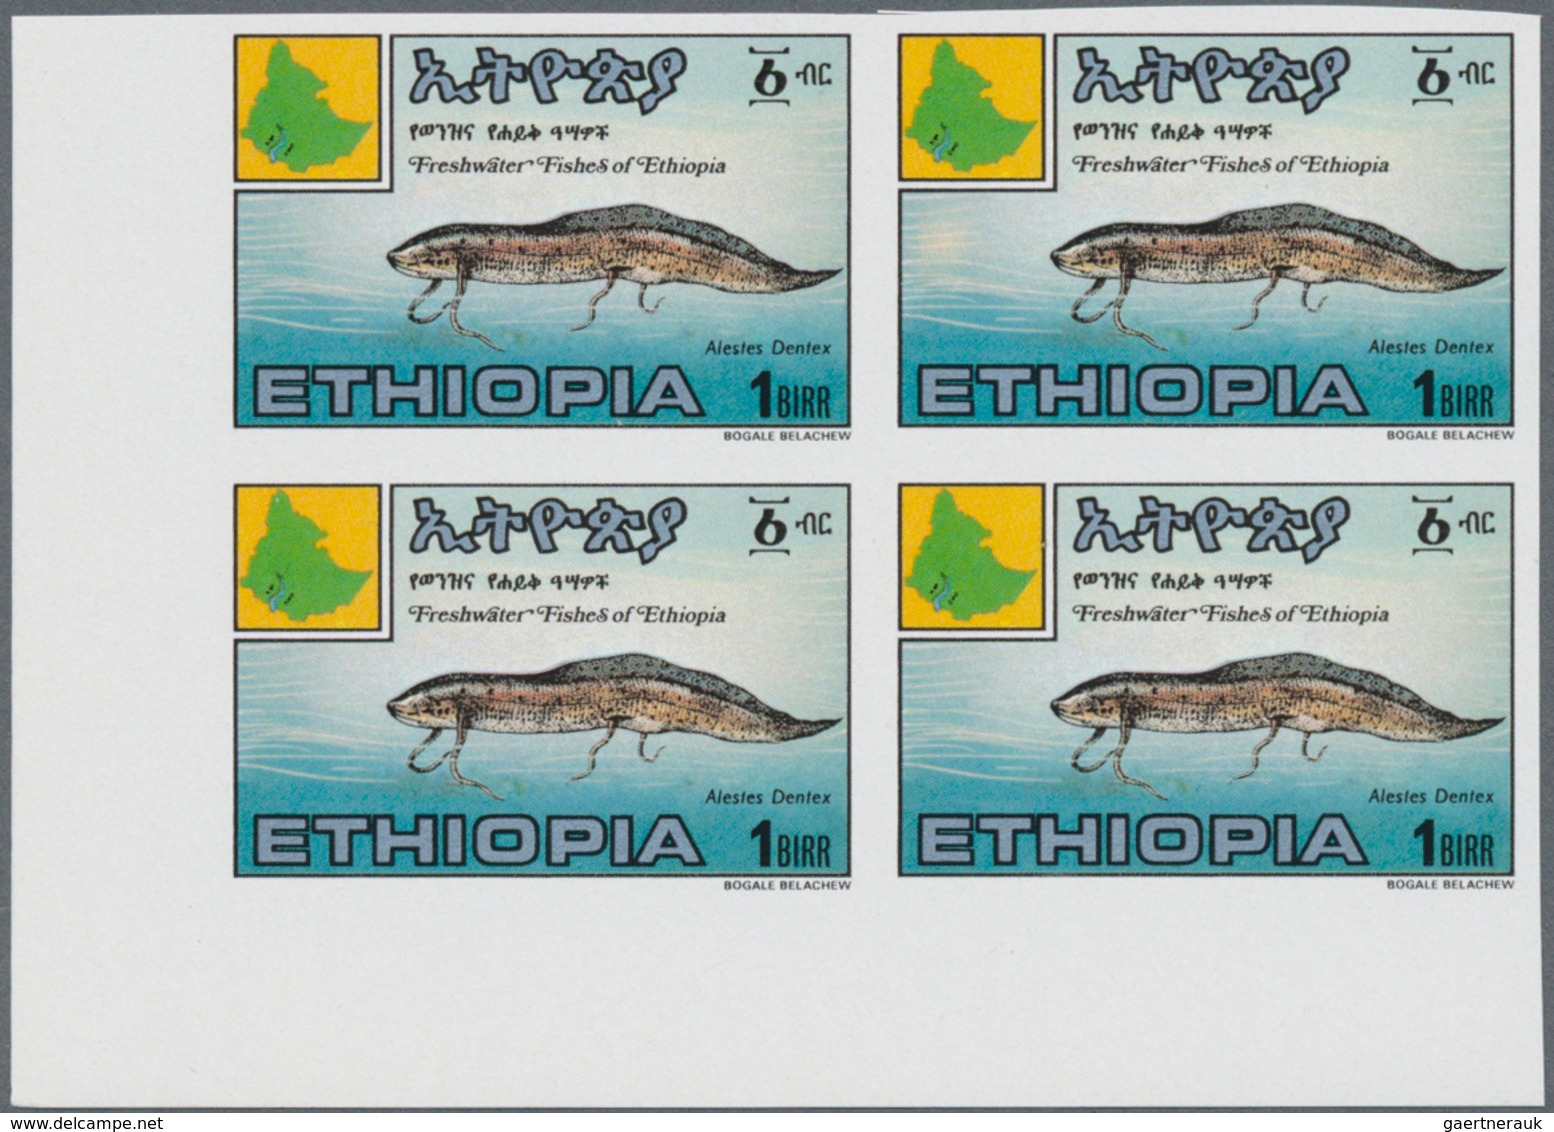 Afrika: 1965/1990 (ca.), holding incl. Ethiopia, Zaire, Senegal, Mauretania, Mali, Lesotho, Liberia,